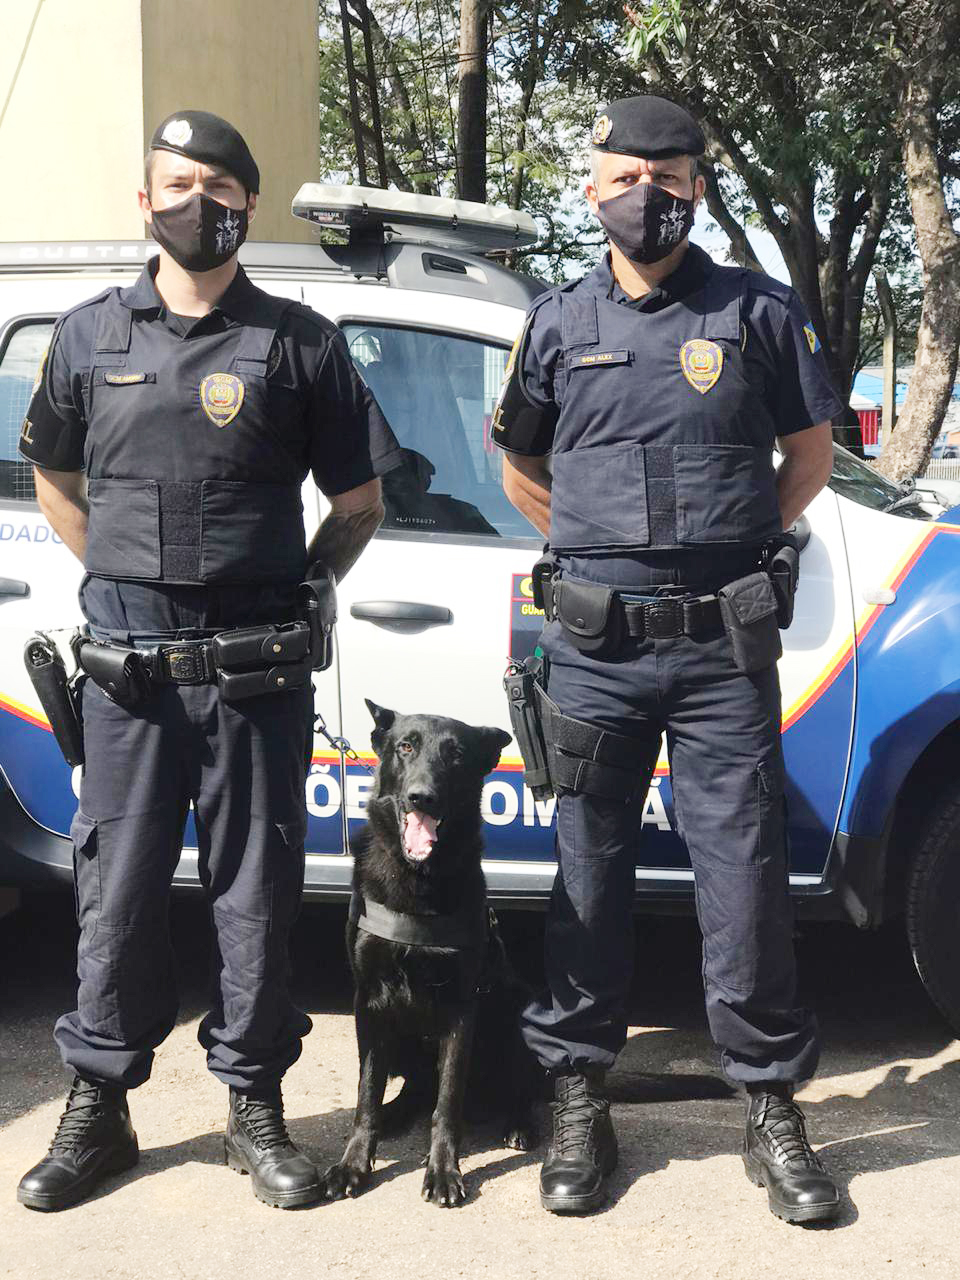 Guarda Civil Municipal de Bragança Paulista tem reforço de cão para patrulhamento